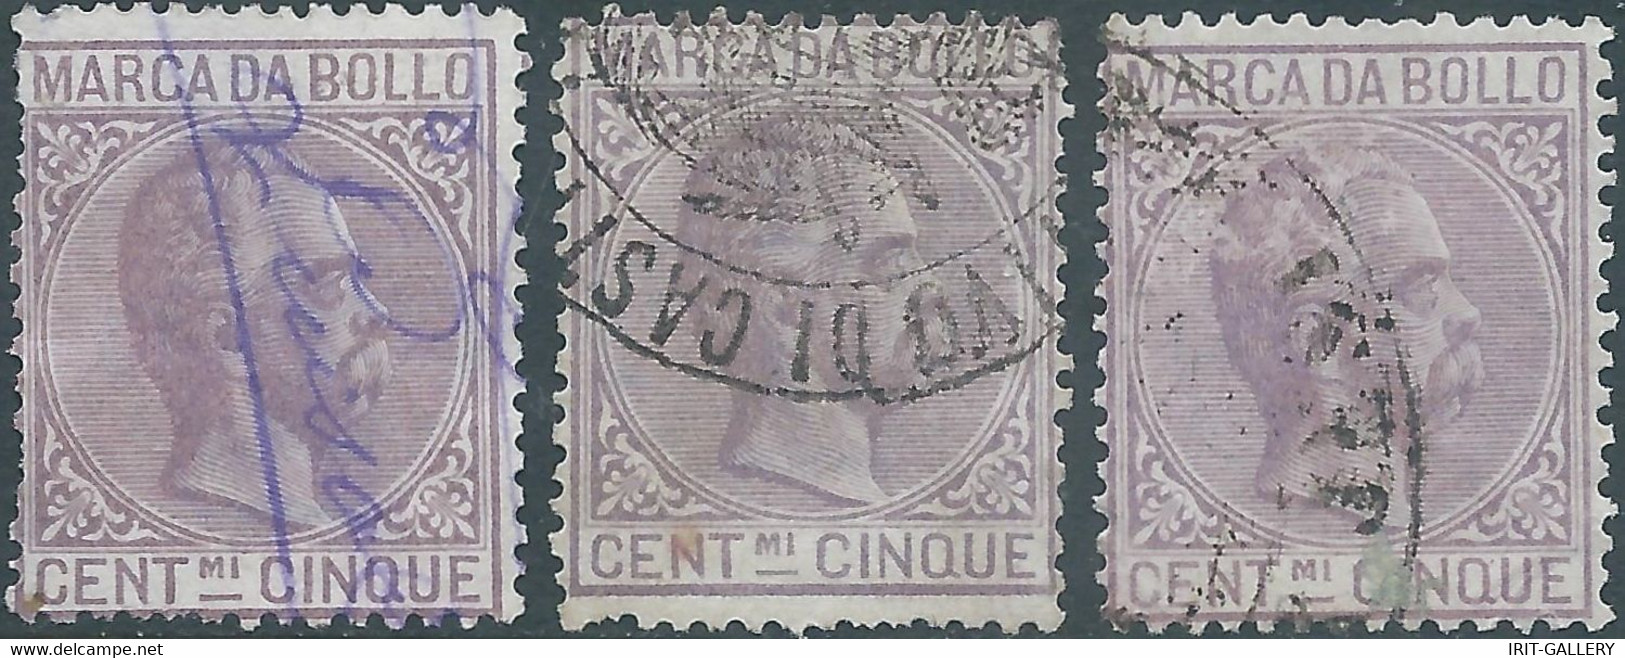 ITALIA-ITALY-ITALIEN,1882 Marca Da Bollo,Revenue Fiscal -Tax,3x 5Cent,Used - Fiscale Zegels